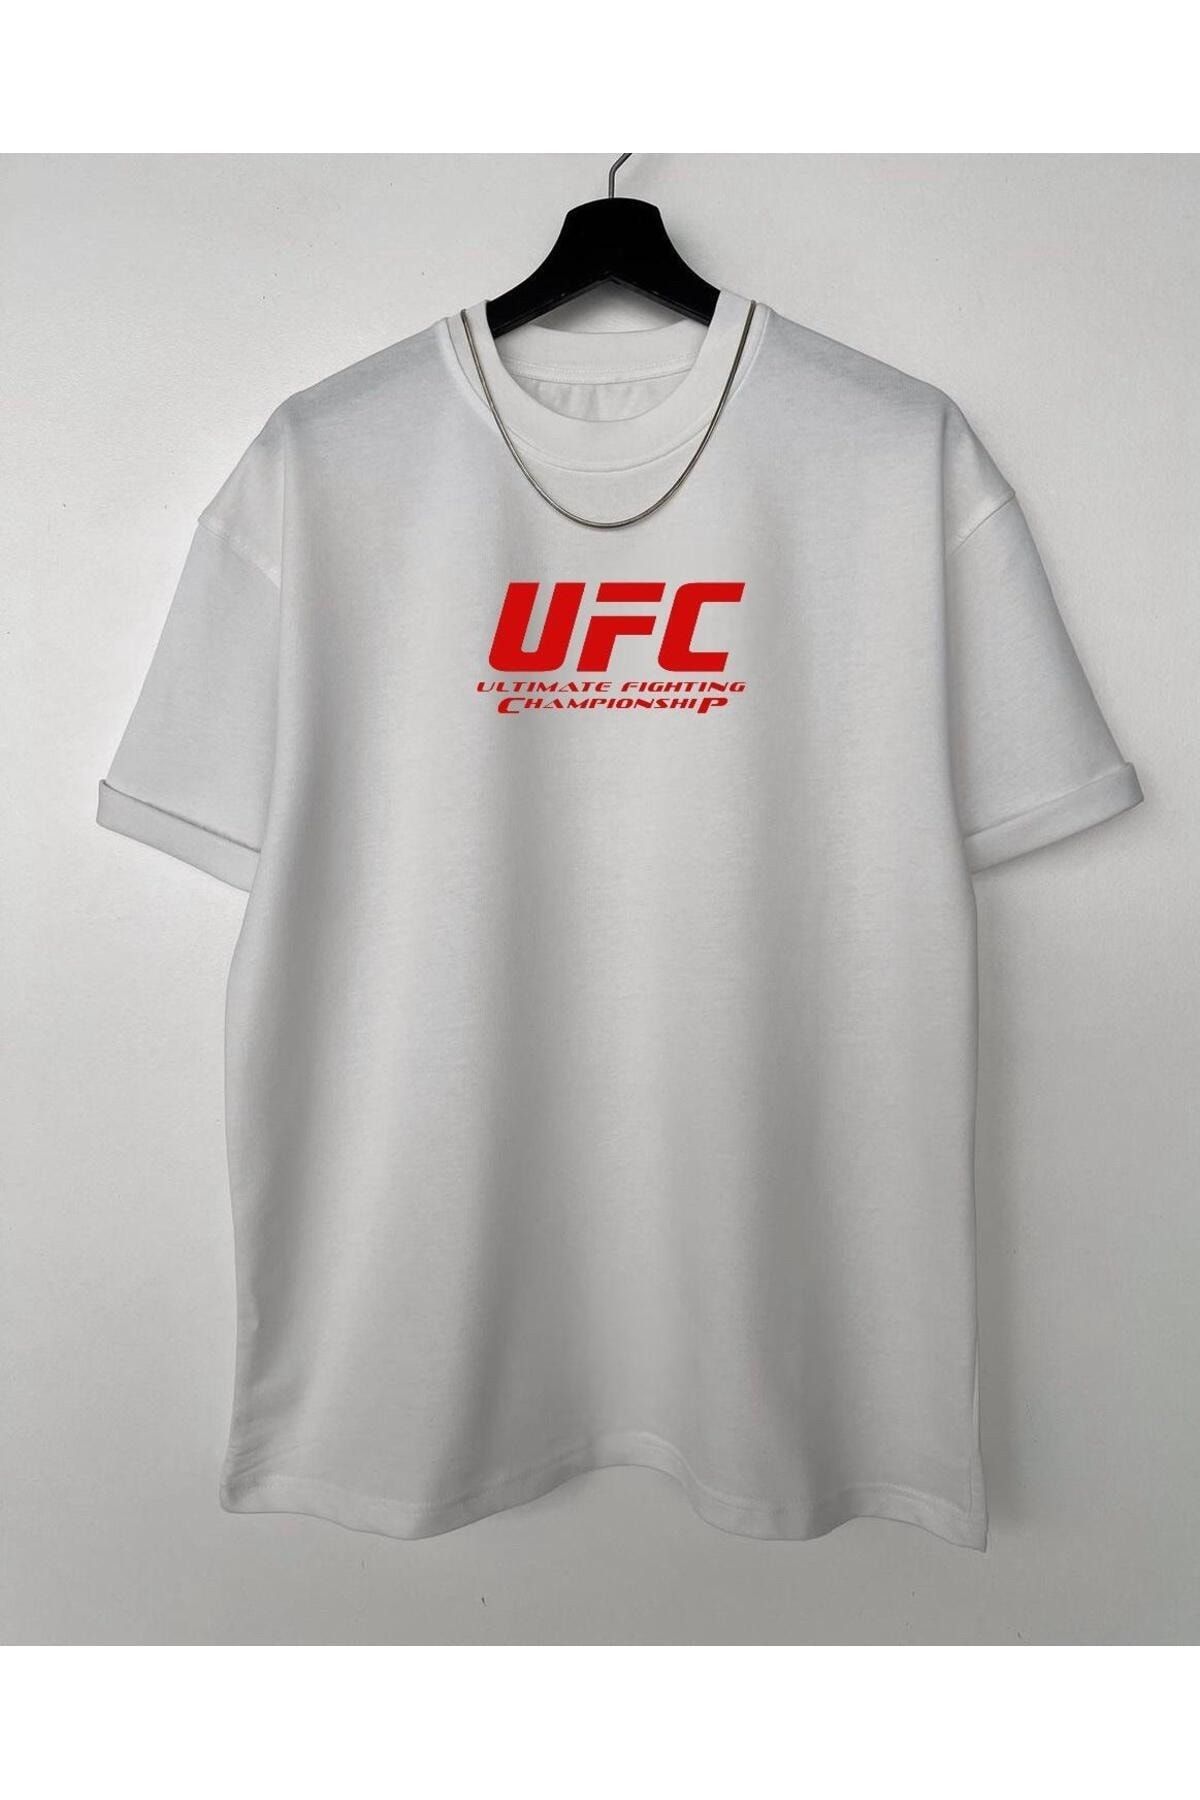 hoz fashion UFC Oversize T-Shirt